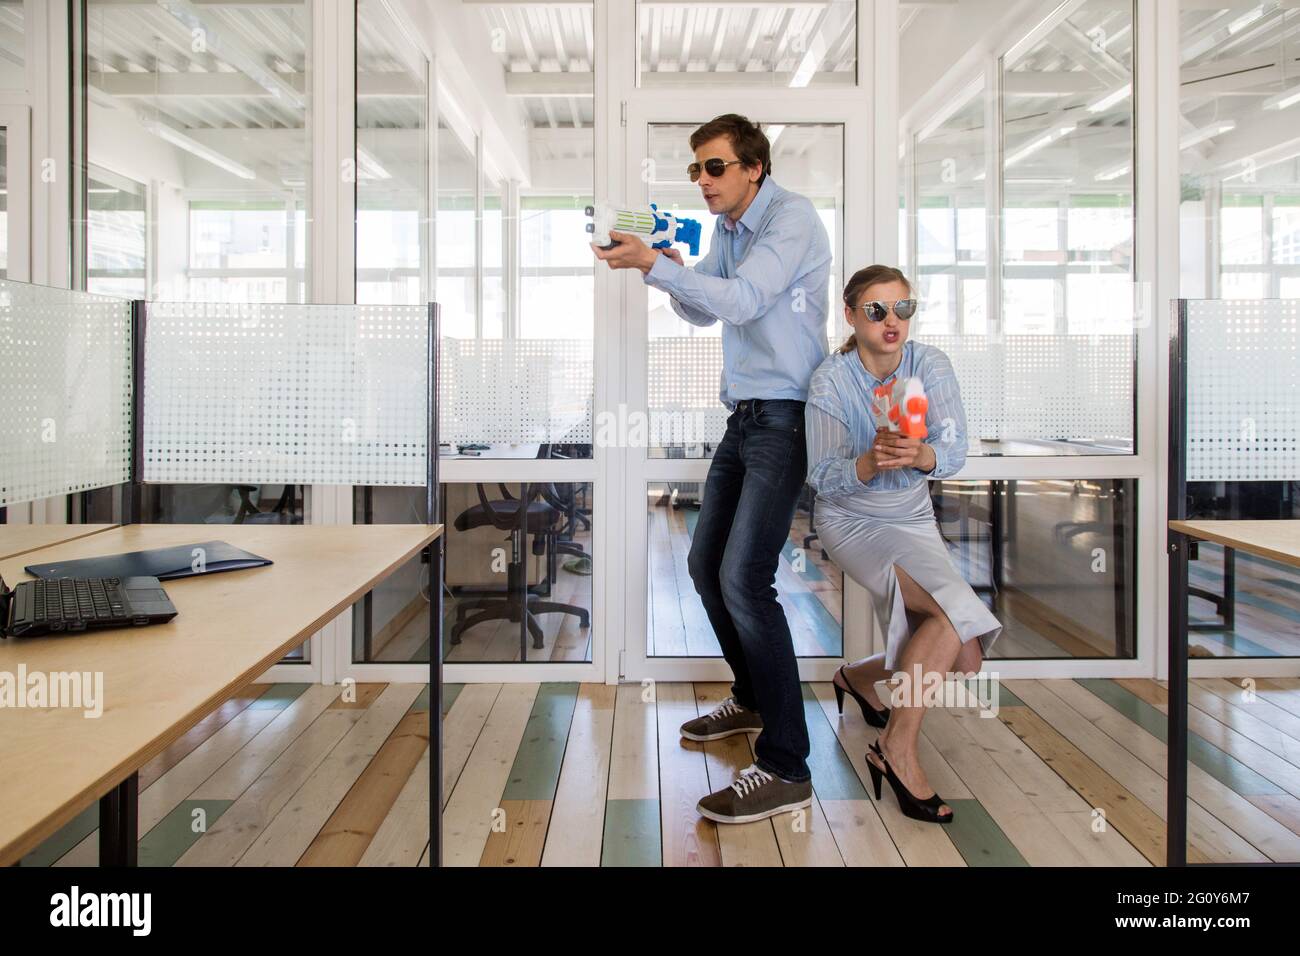 Mann und Frau in formellen Outfits stehen zurück an den Rücken und zielen auf Spielzeugpistolen, während sie Spaß im Büro haben Stockfoto